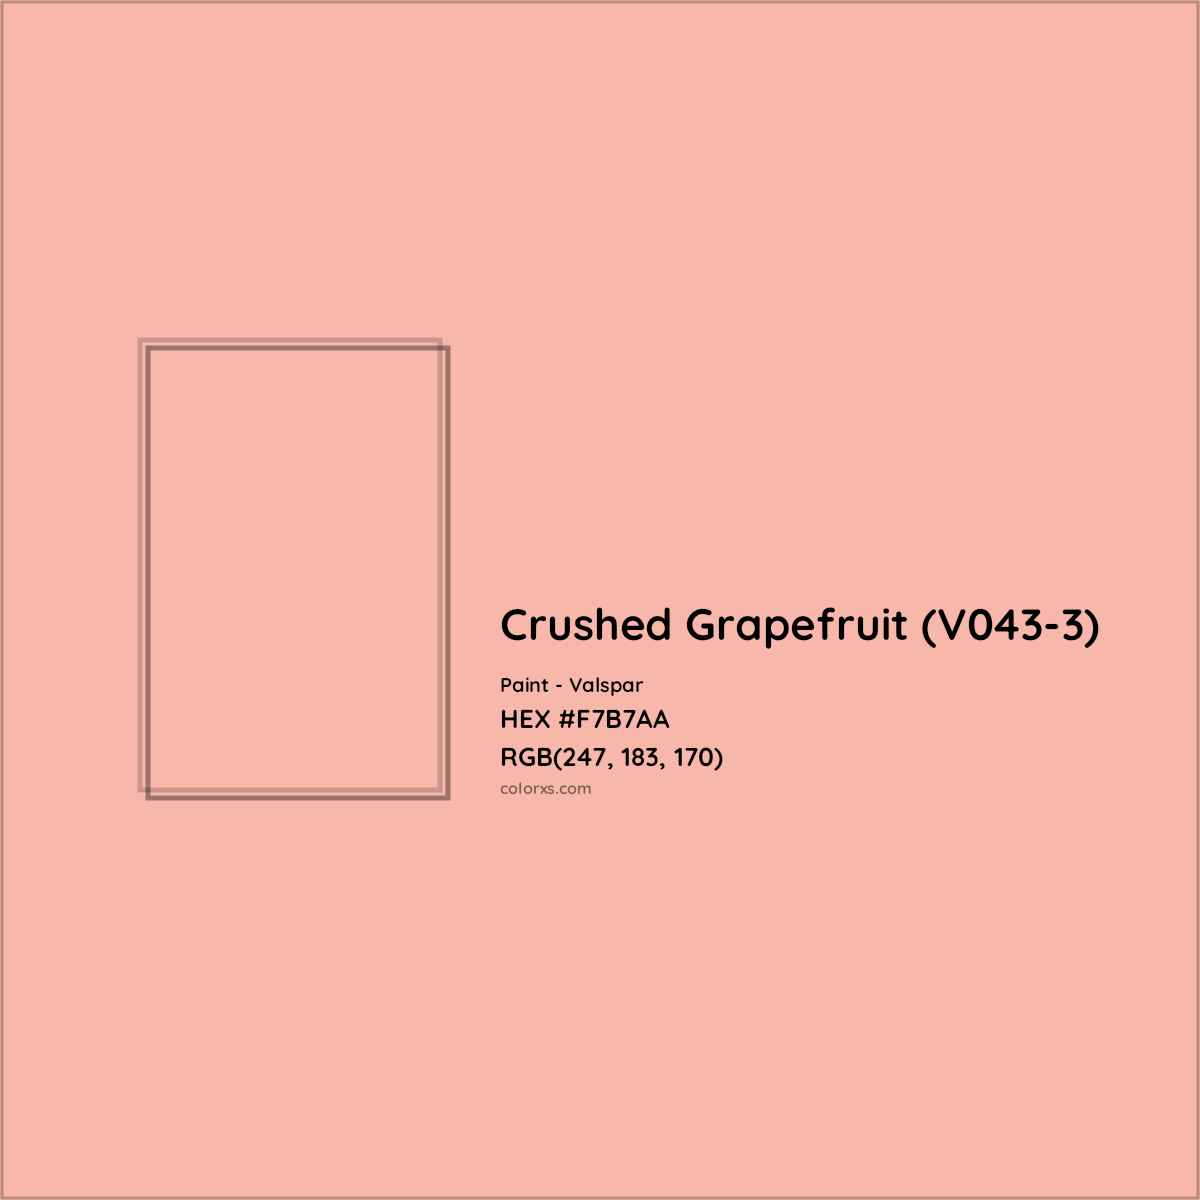 HEX #F7B7AA Crushed Grapefruit (V043-3) Paint Valspar - Color Code